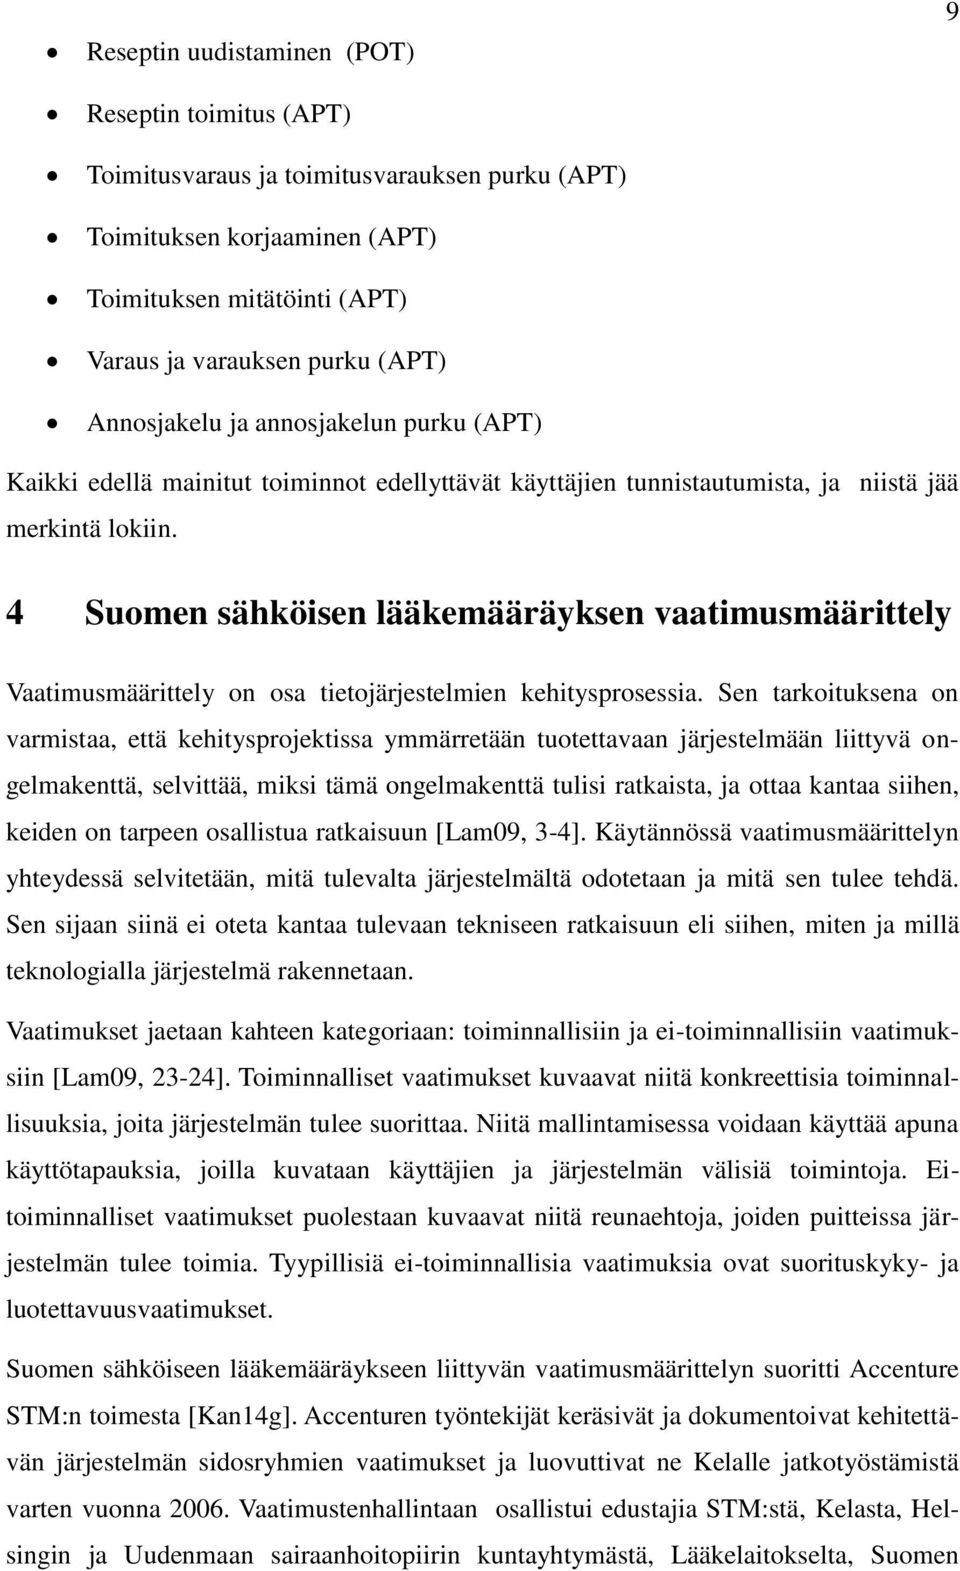 4 Suomen sähköisen lääkemääräyksen vaatimusmäärittely Vaatimusmäärittely on osa tietojärjestelmien kehitysprosessia.